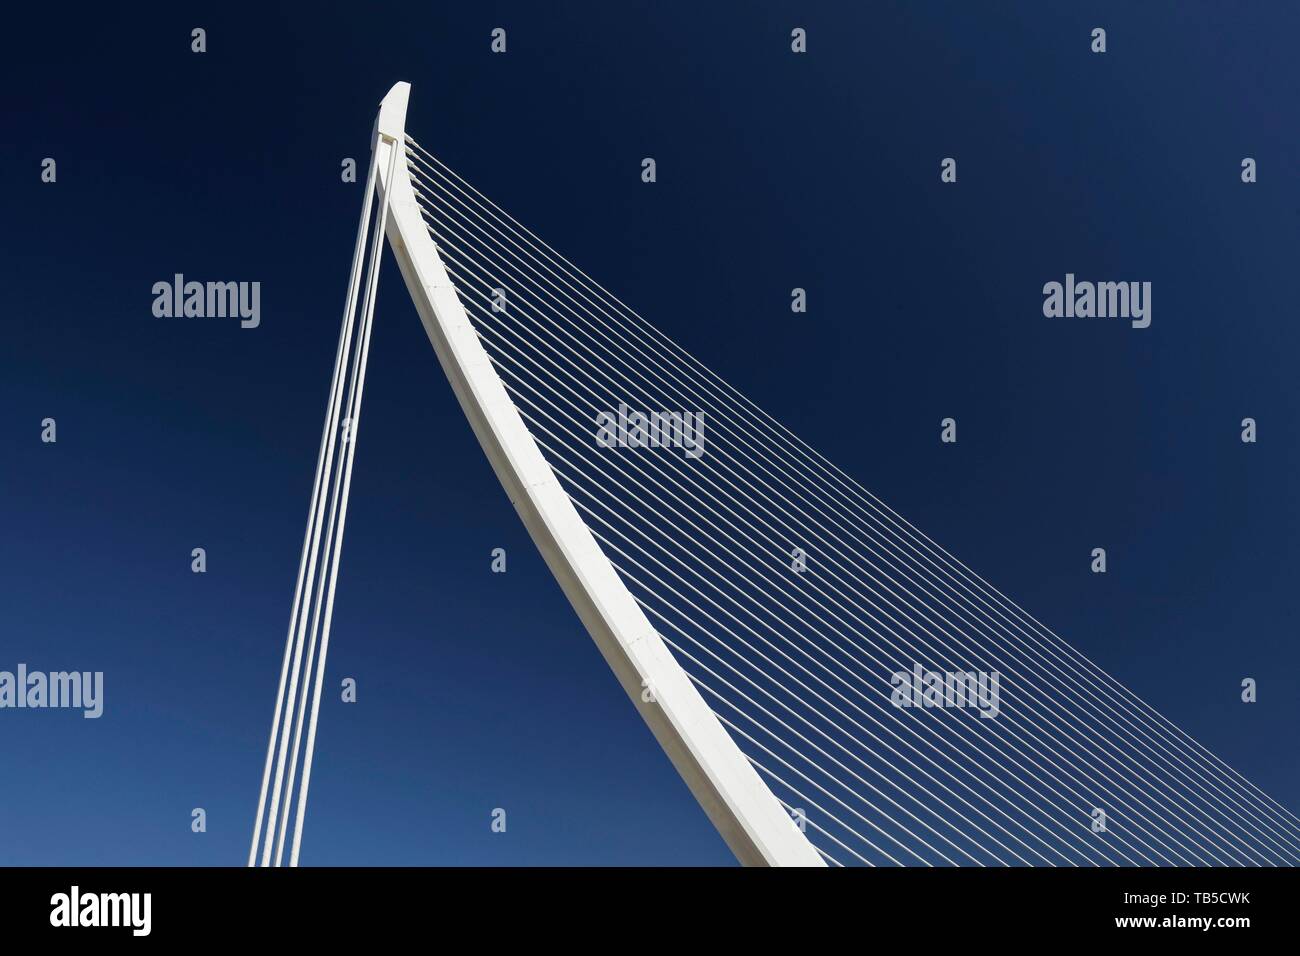 Arpa-cavo sagomato-alloggiato ponte Pont de L'Assut de l'Or, Santiago Calatrava, CAC Ciutat des les Arts i les Ciencies, Valencia, Spagna Foto Stock